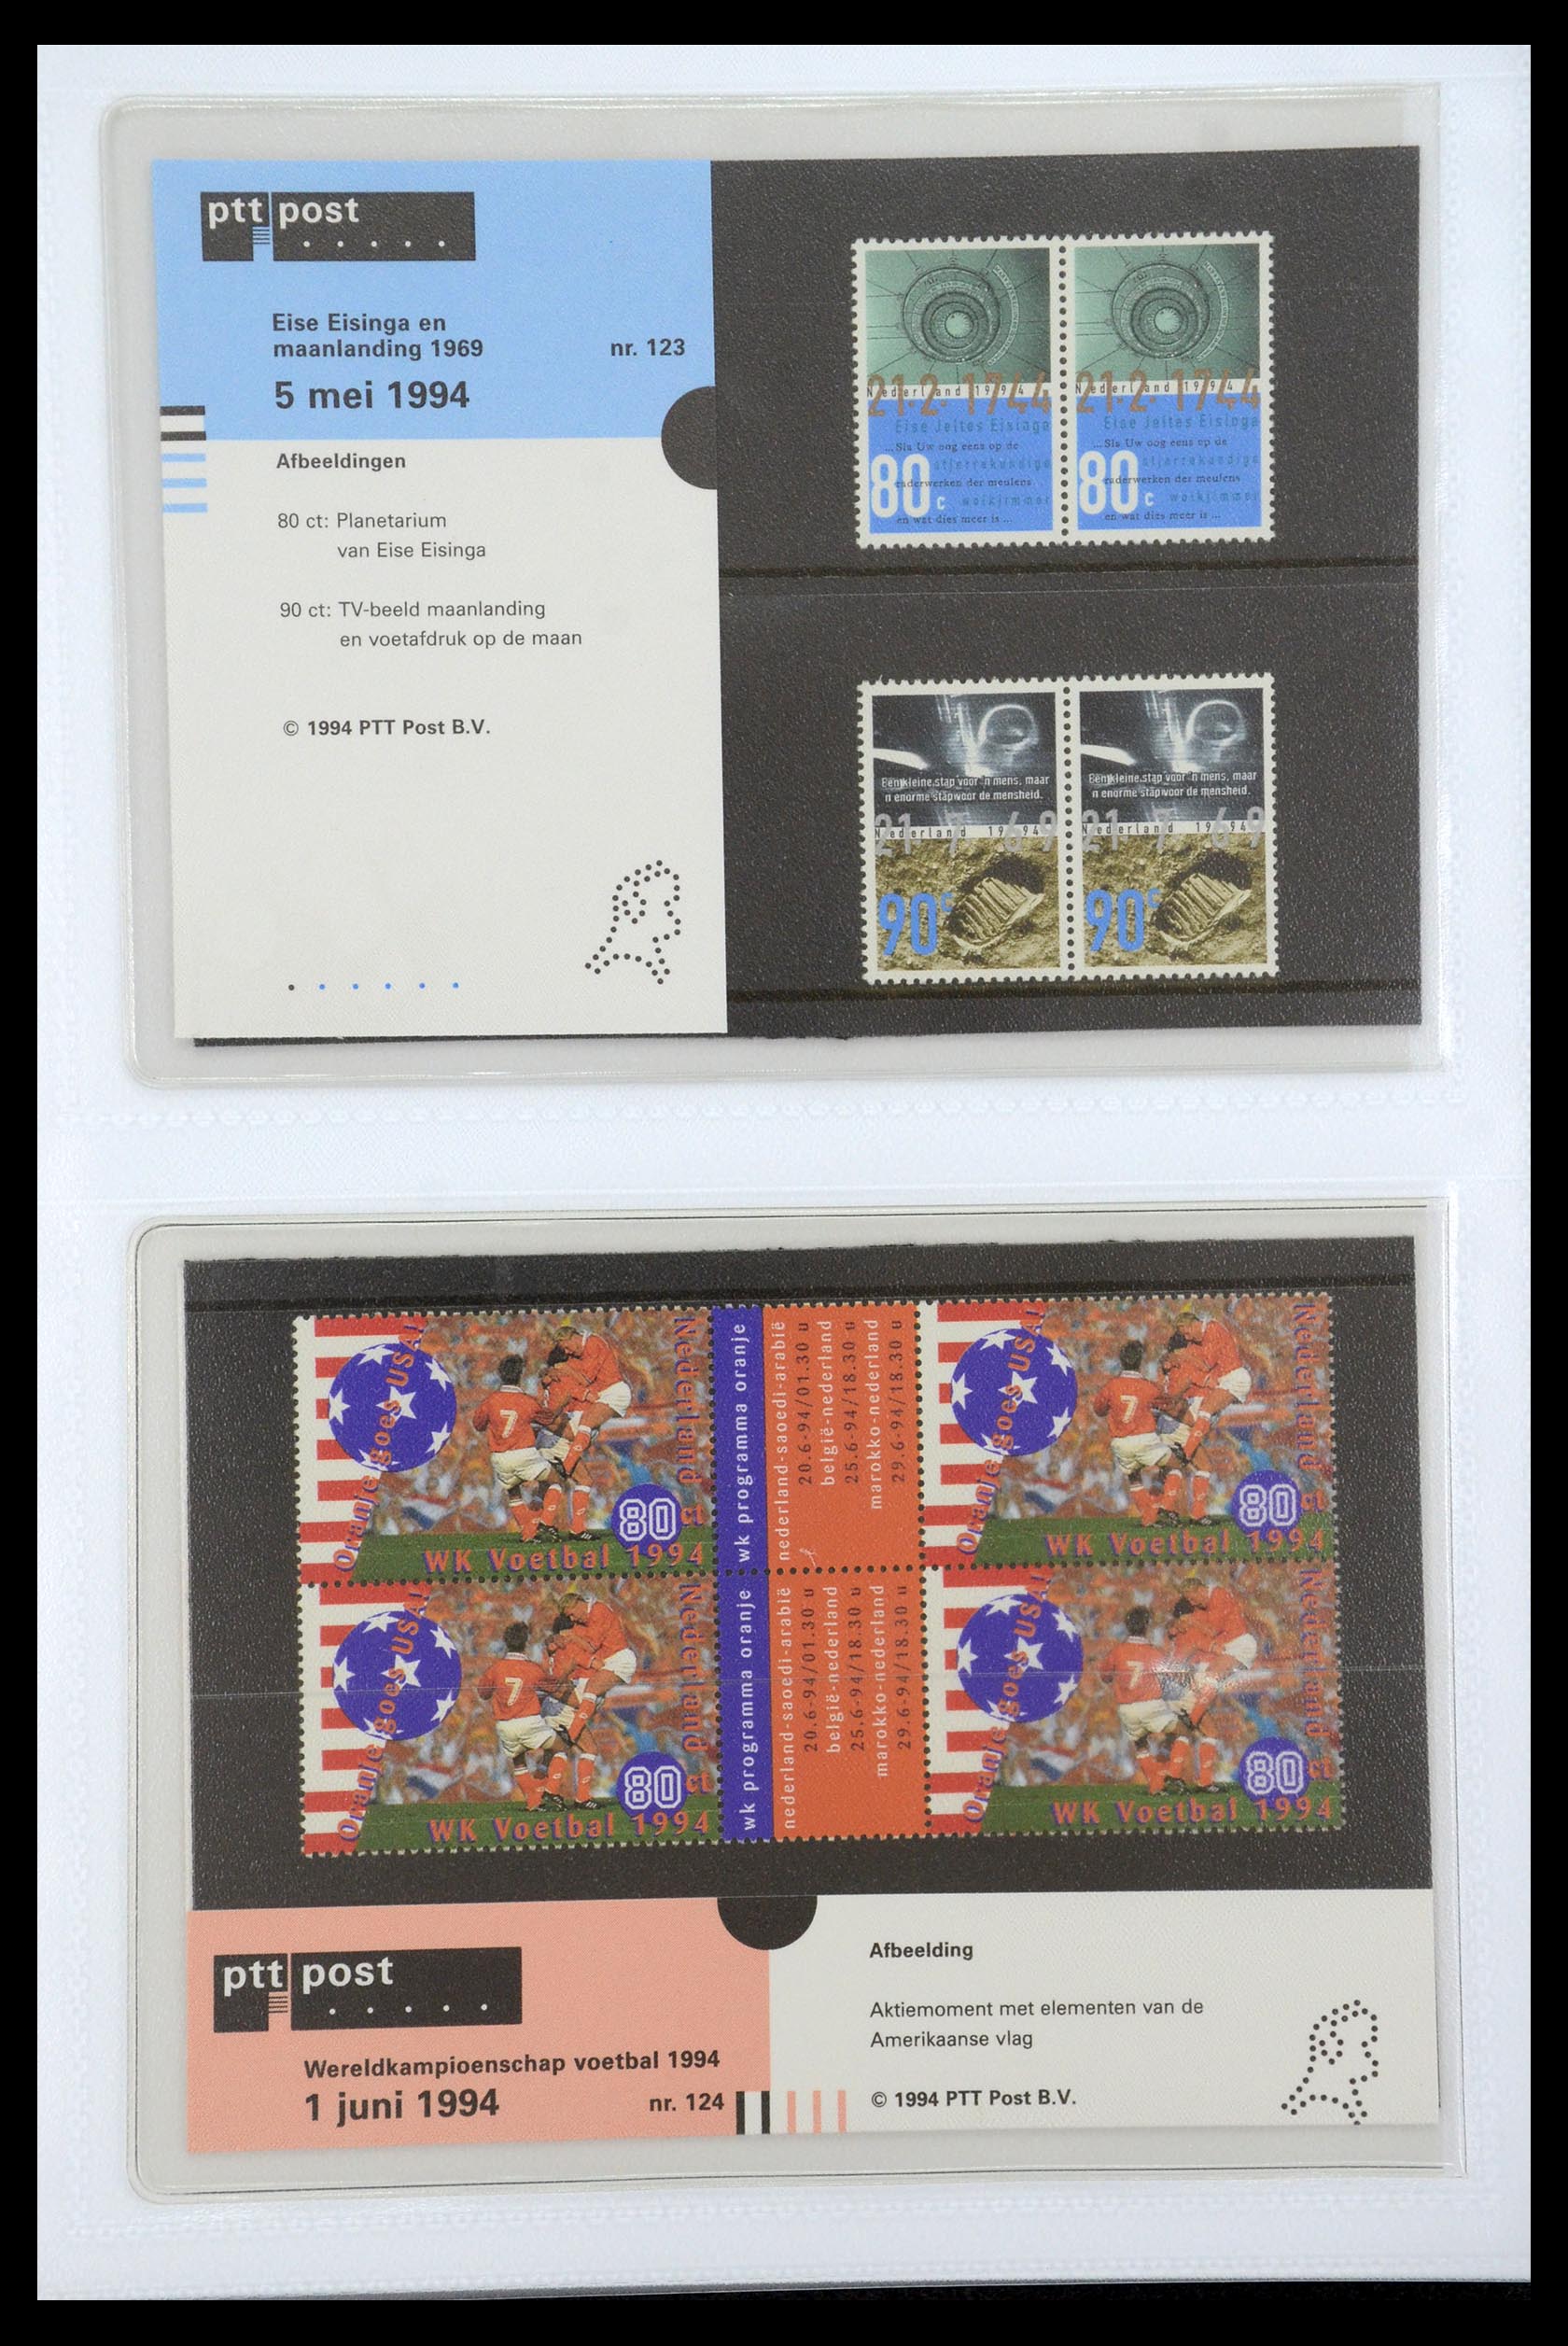 35947 064 - Stamp Collection 35947 Netherlands PTT presentation packs 1982-2019!